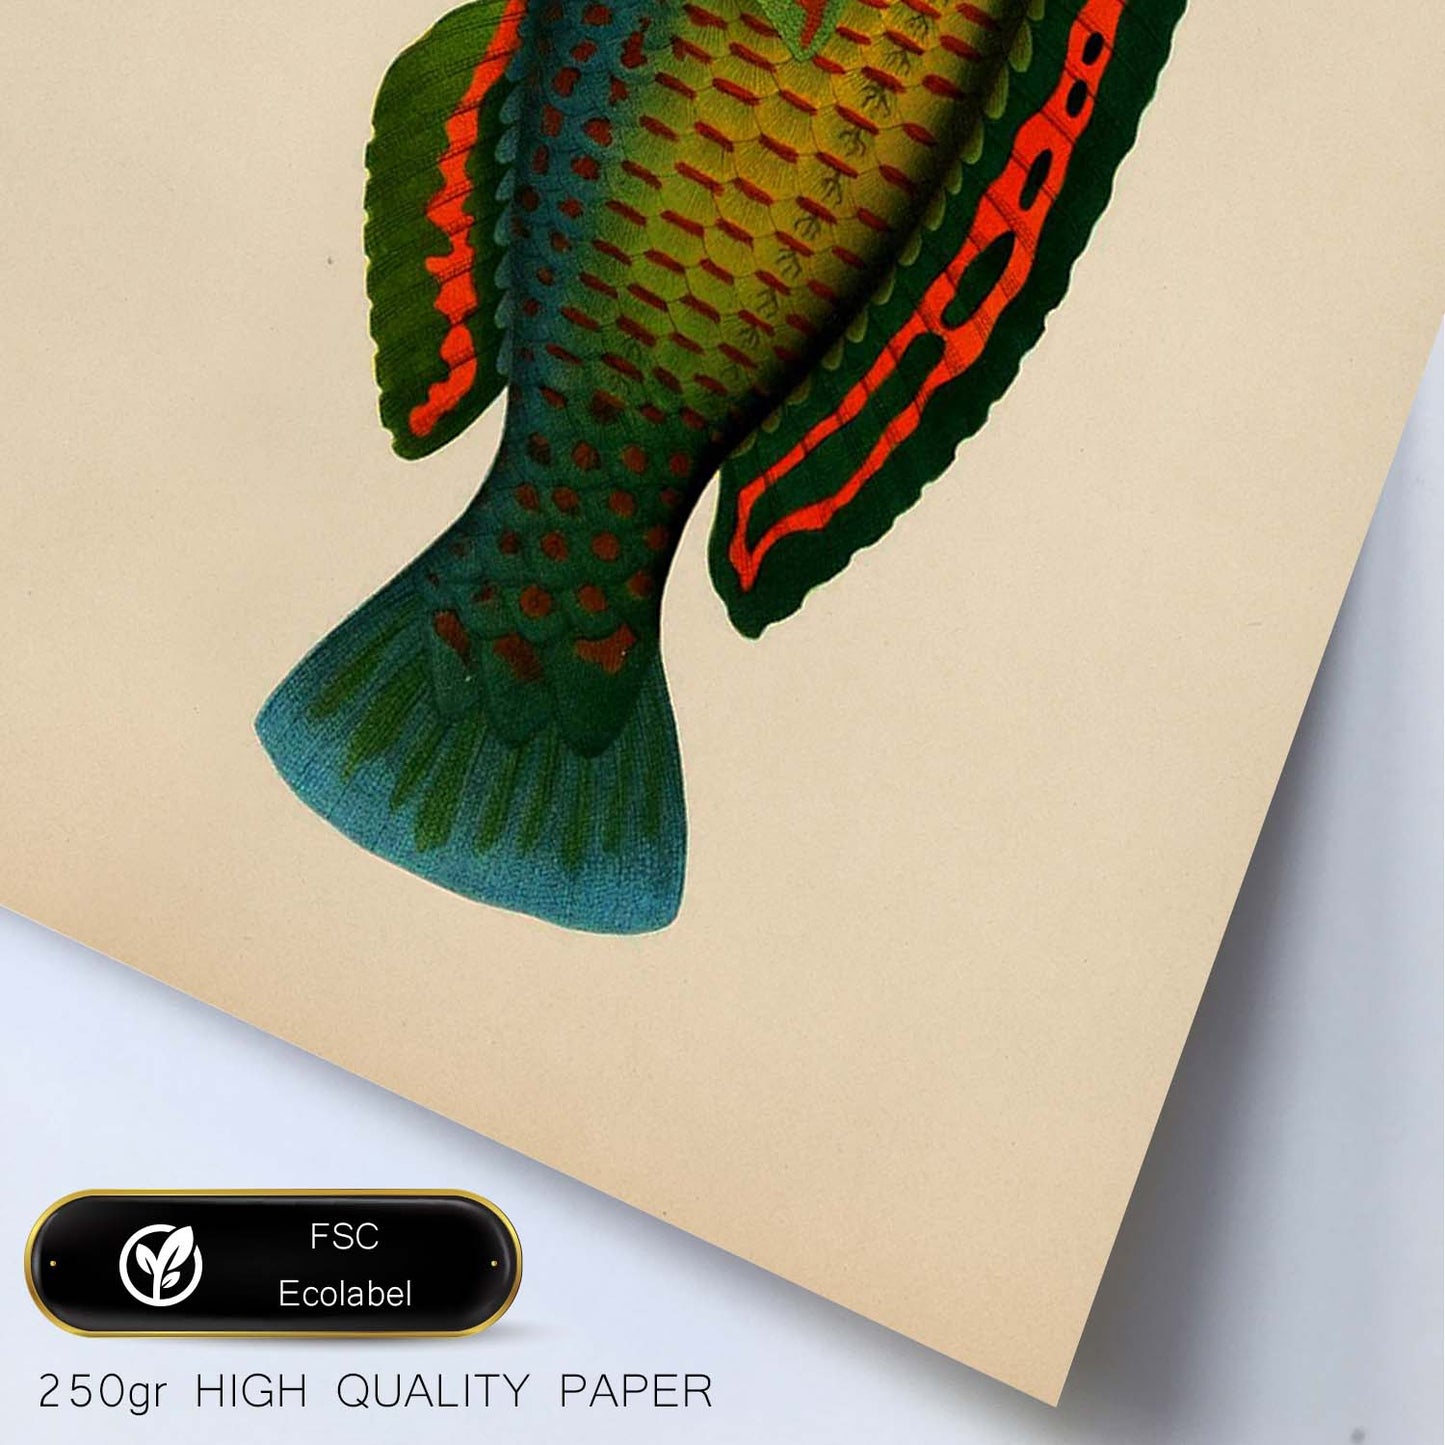 Lámina de pez verde rojo azul amarillo en , fondo papel vintage.-Artwork-Nacnic-Nacnic Estudio SL